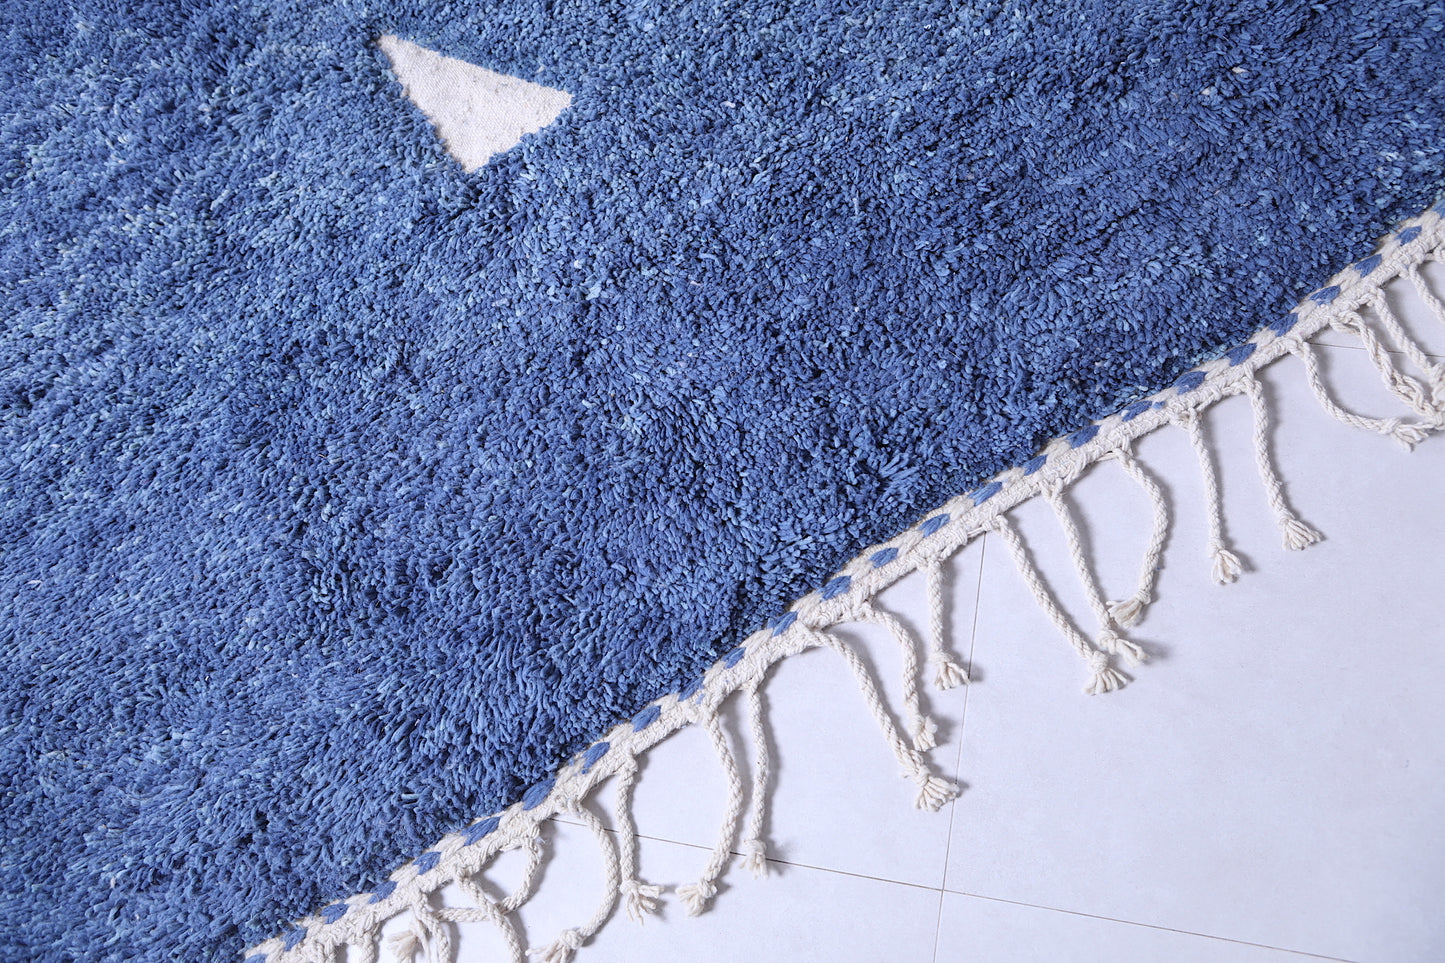 Moroccan Beni ourain rug 14.5 X 18.6 Feet